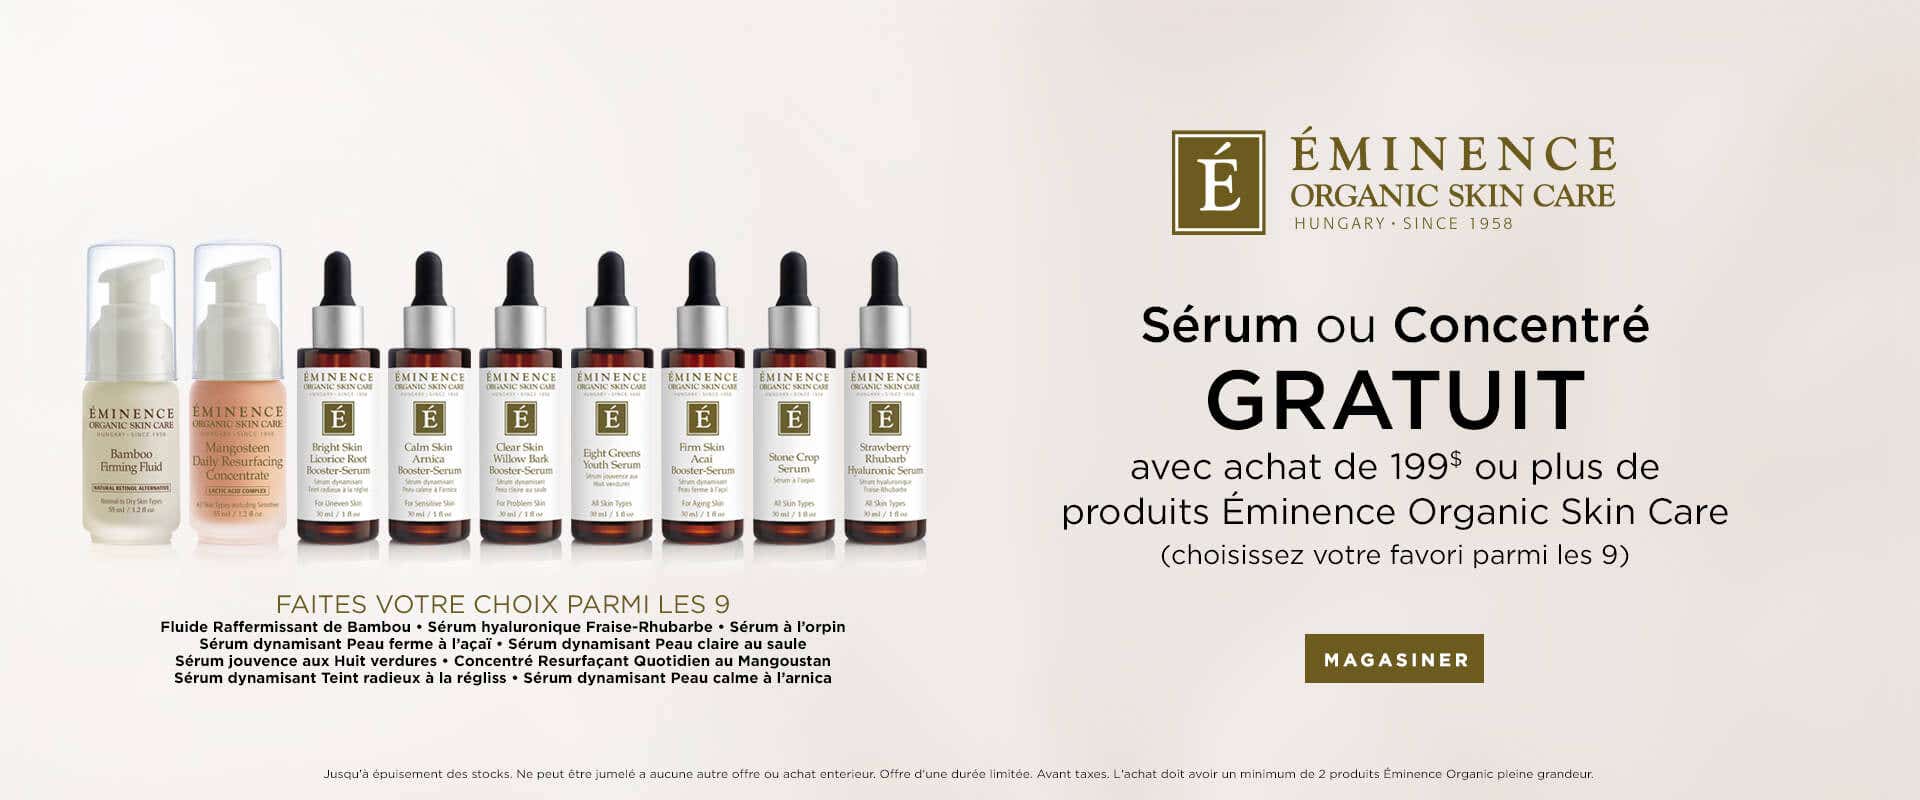 Sérum ou concentré GRATUIT à l'achat de 199$ ou plus de produits Eminence Organic Skin Care.